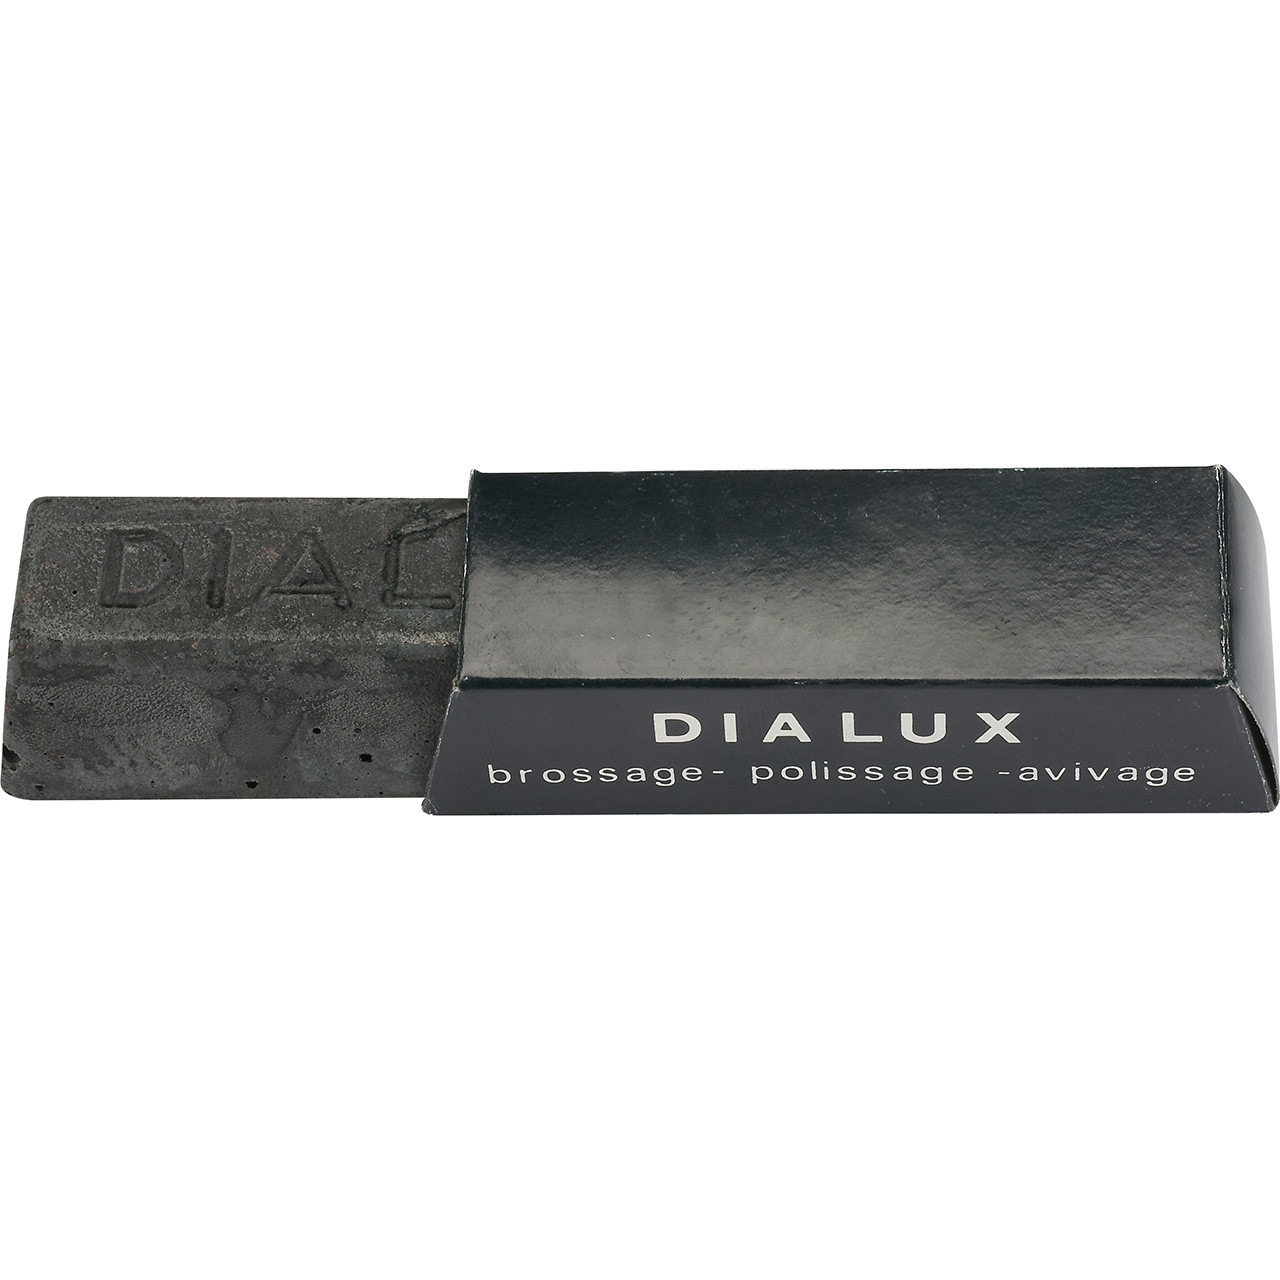 Dialux Noir Polishing Compound - Black